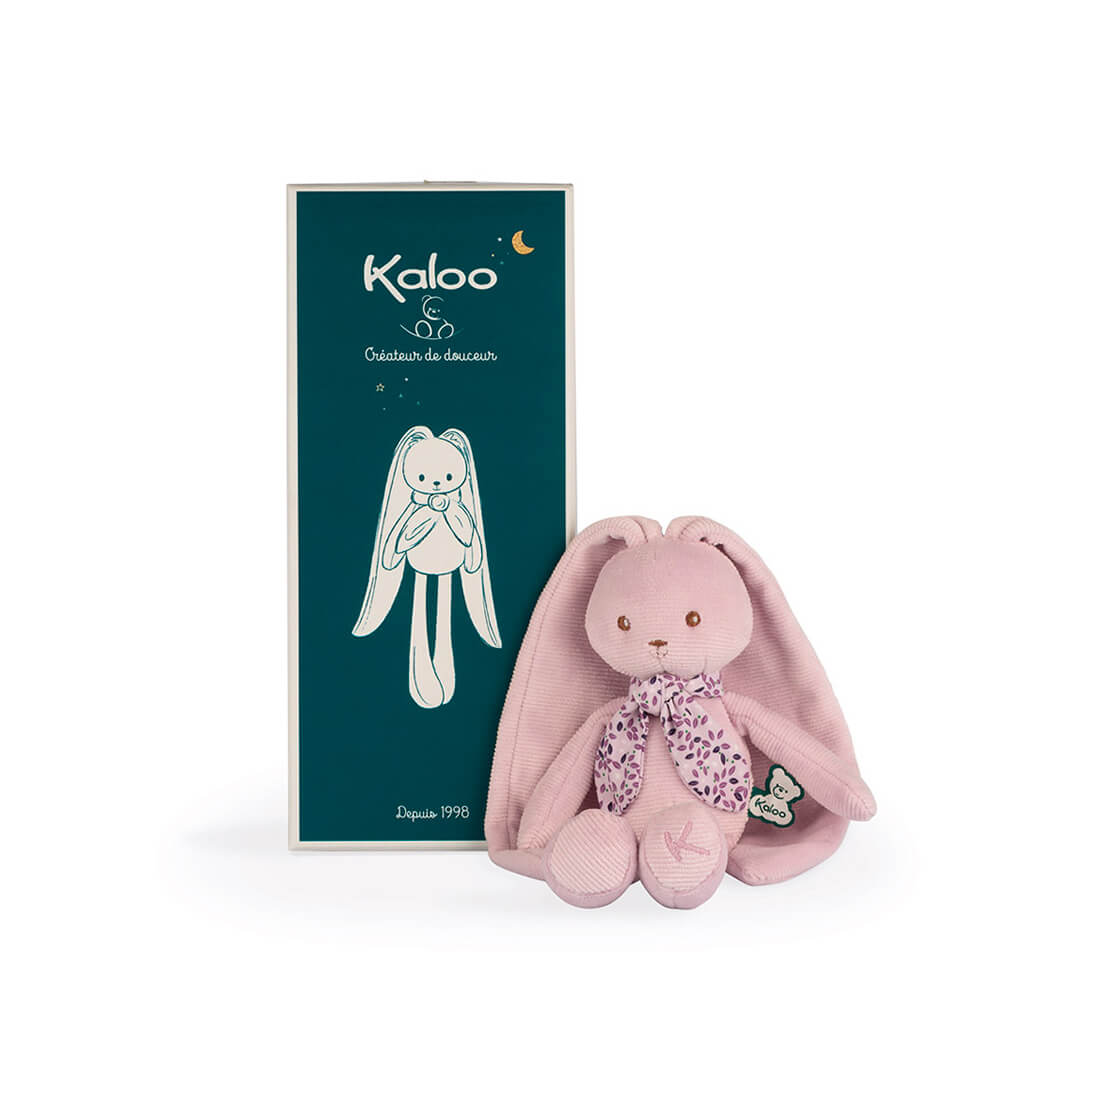 Мягкая игрушка Kaloo "Кролик", серия "Lapinoo" розовый, маленький, 25 см - фото №1